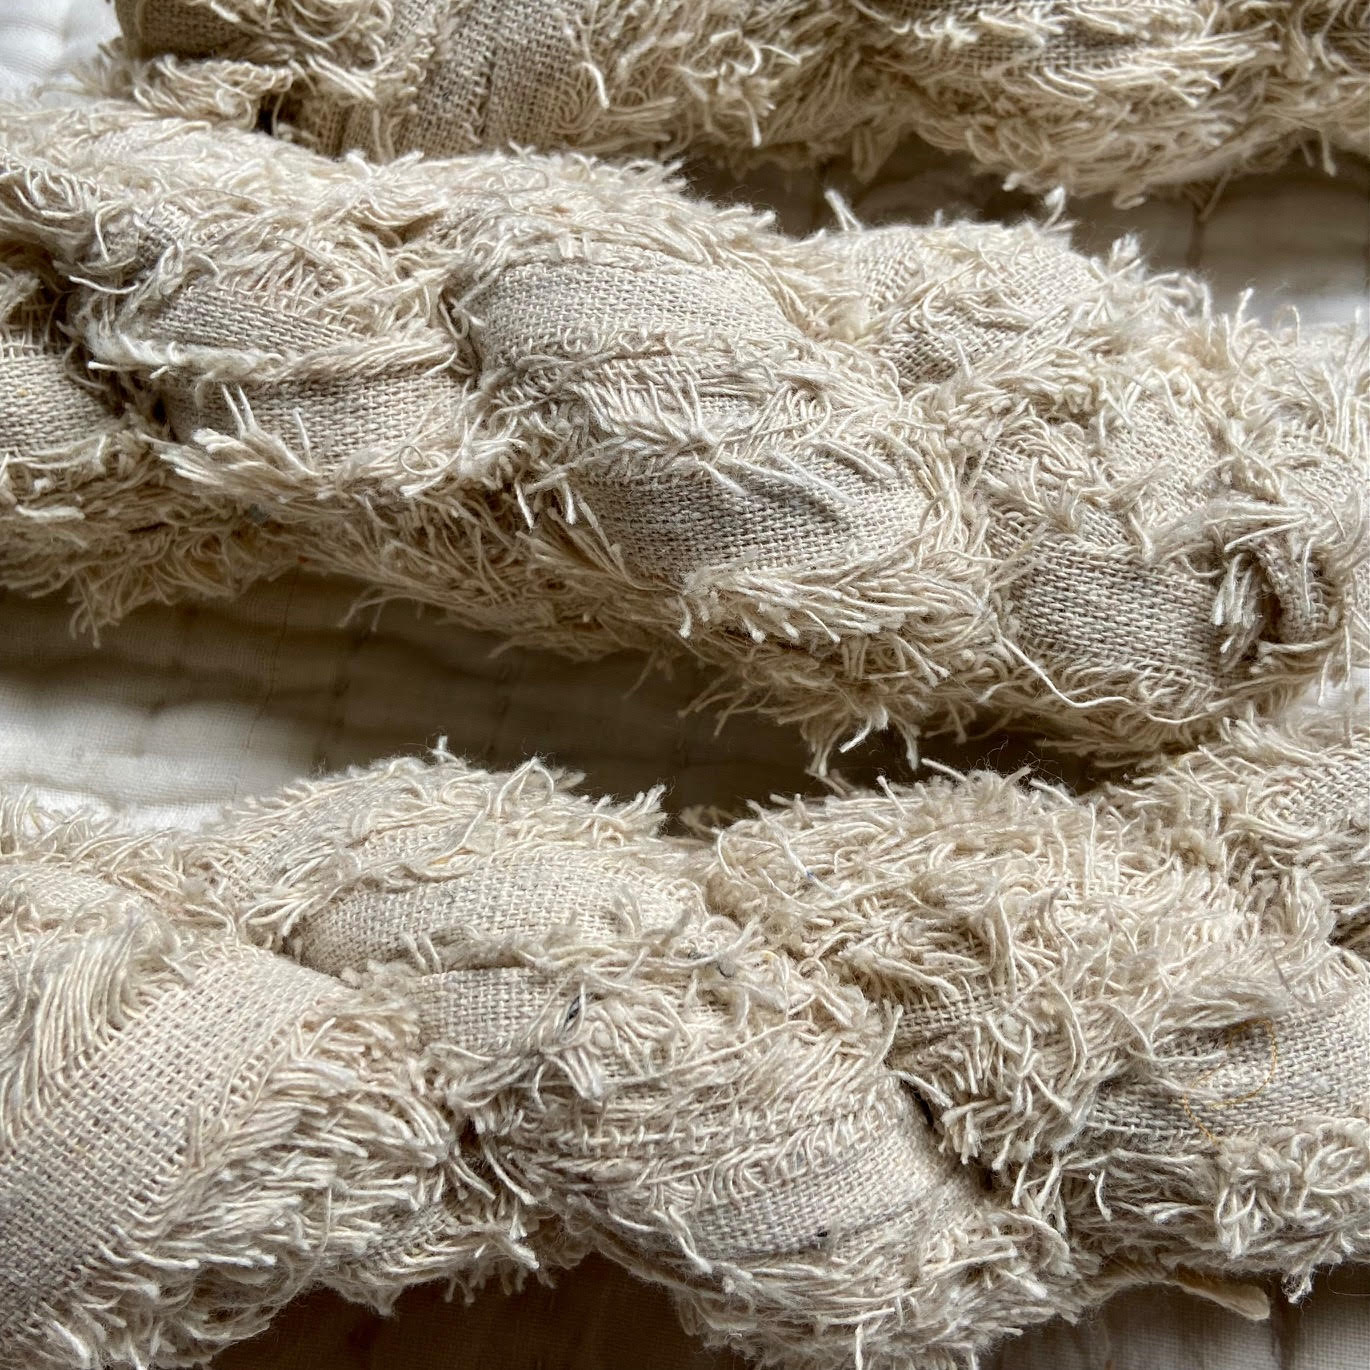 Cotton Bundles